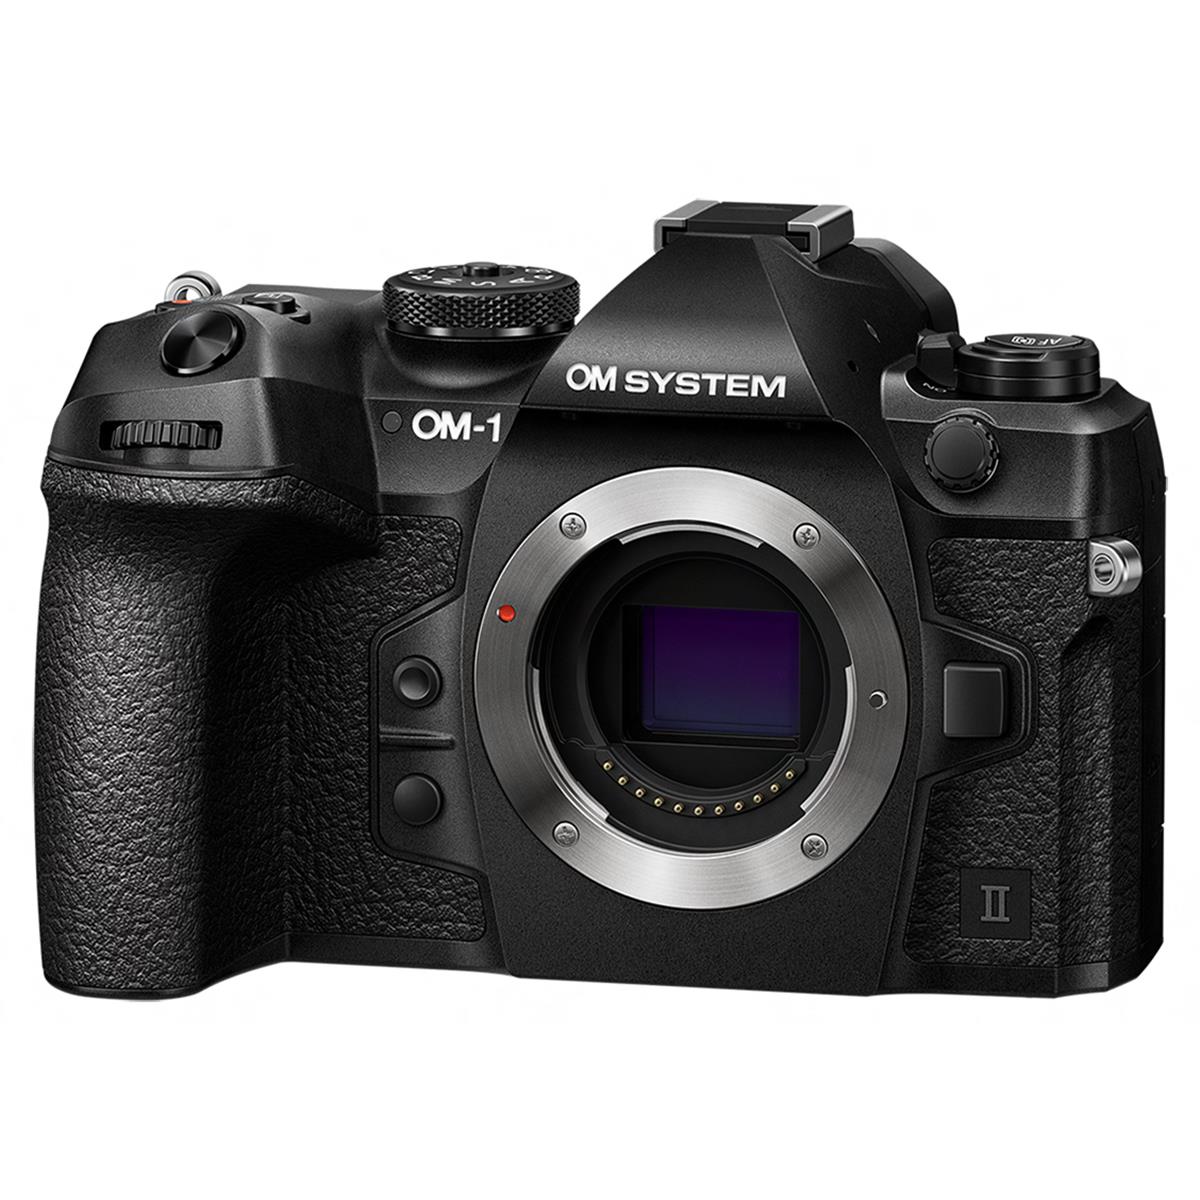 Image of OM SYSTEM OM-1 Mark II Mirrorless Camera